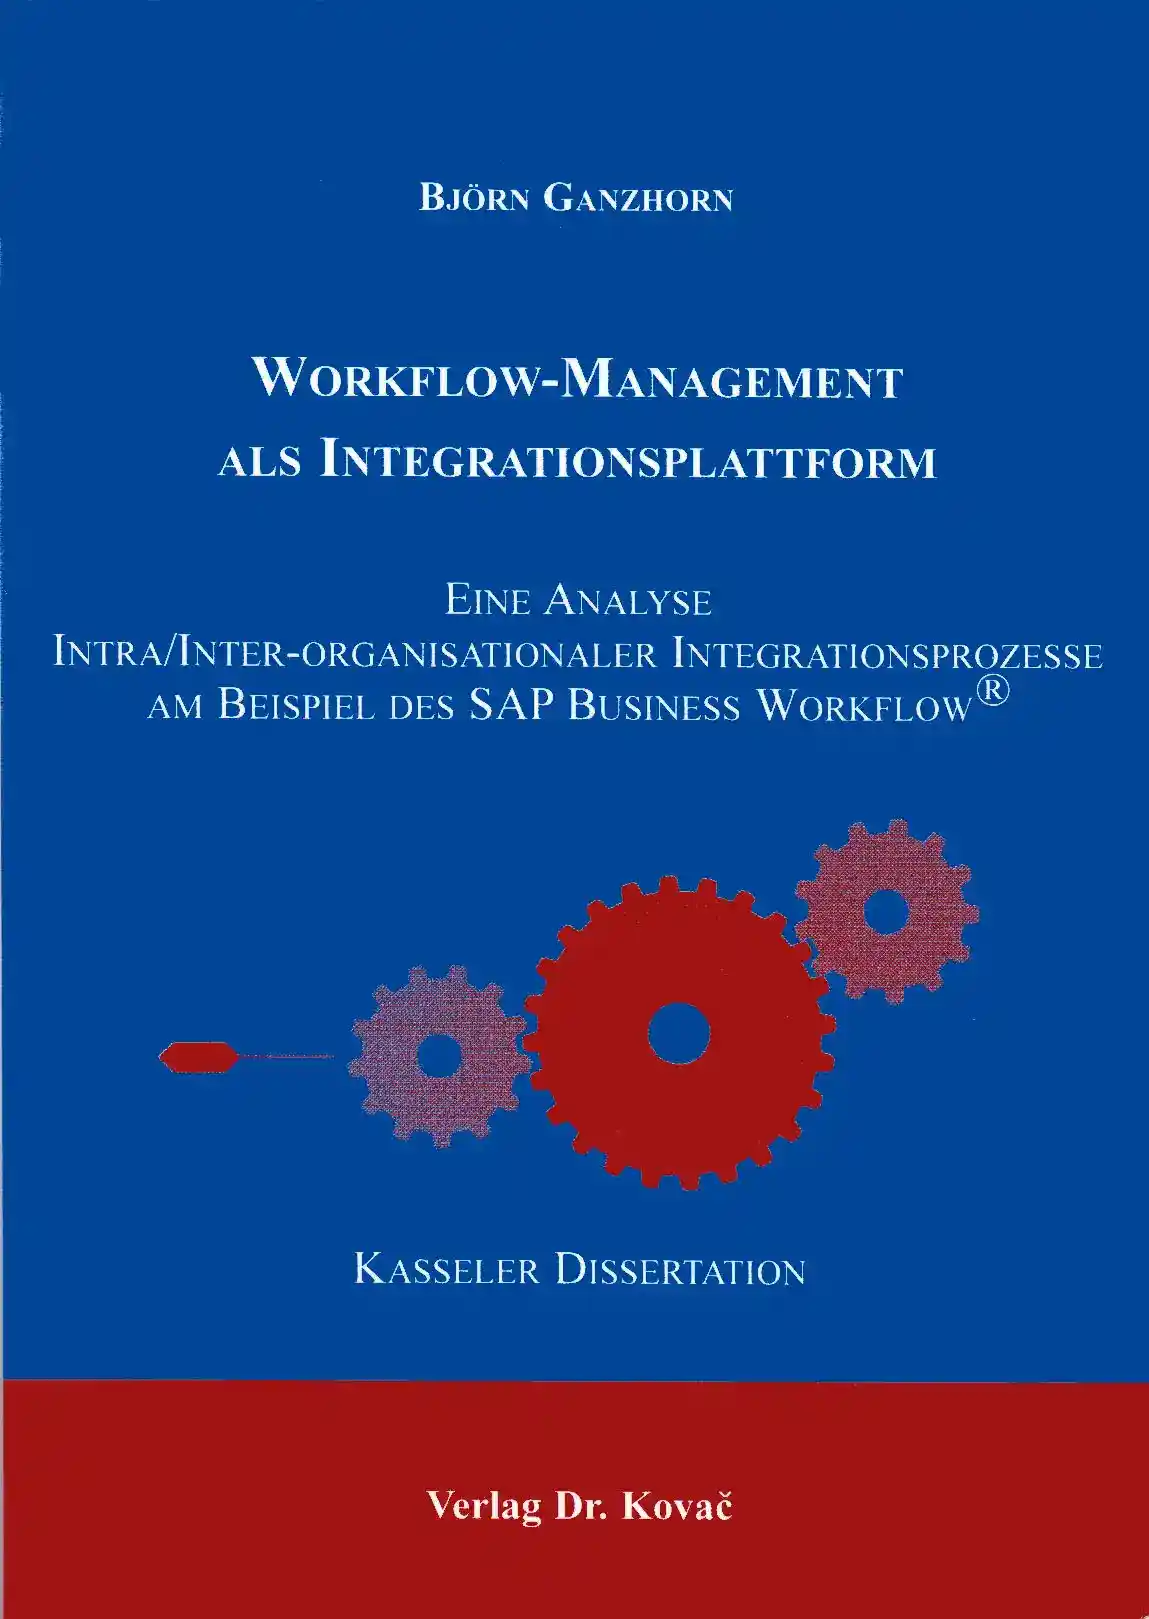 Workflow-Management als Integrationsplattform (Doktorarbeit)